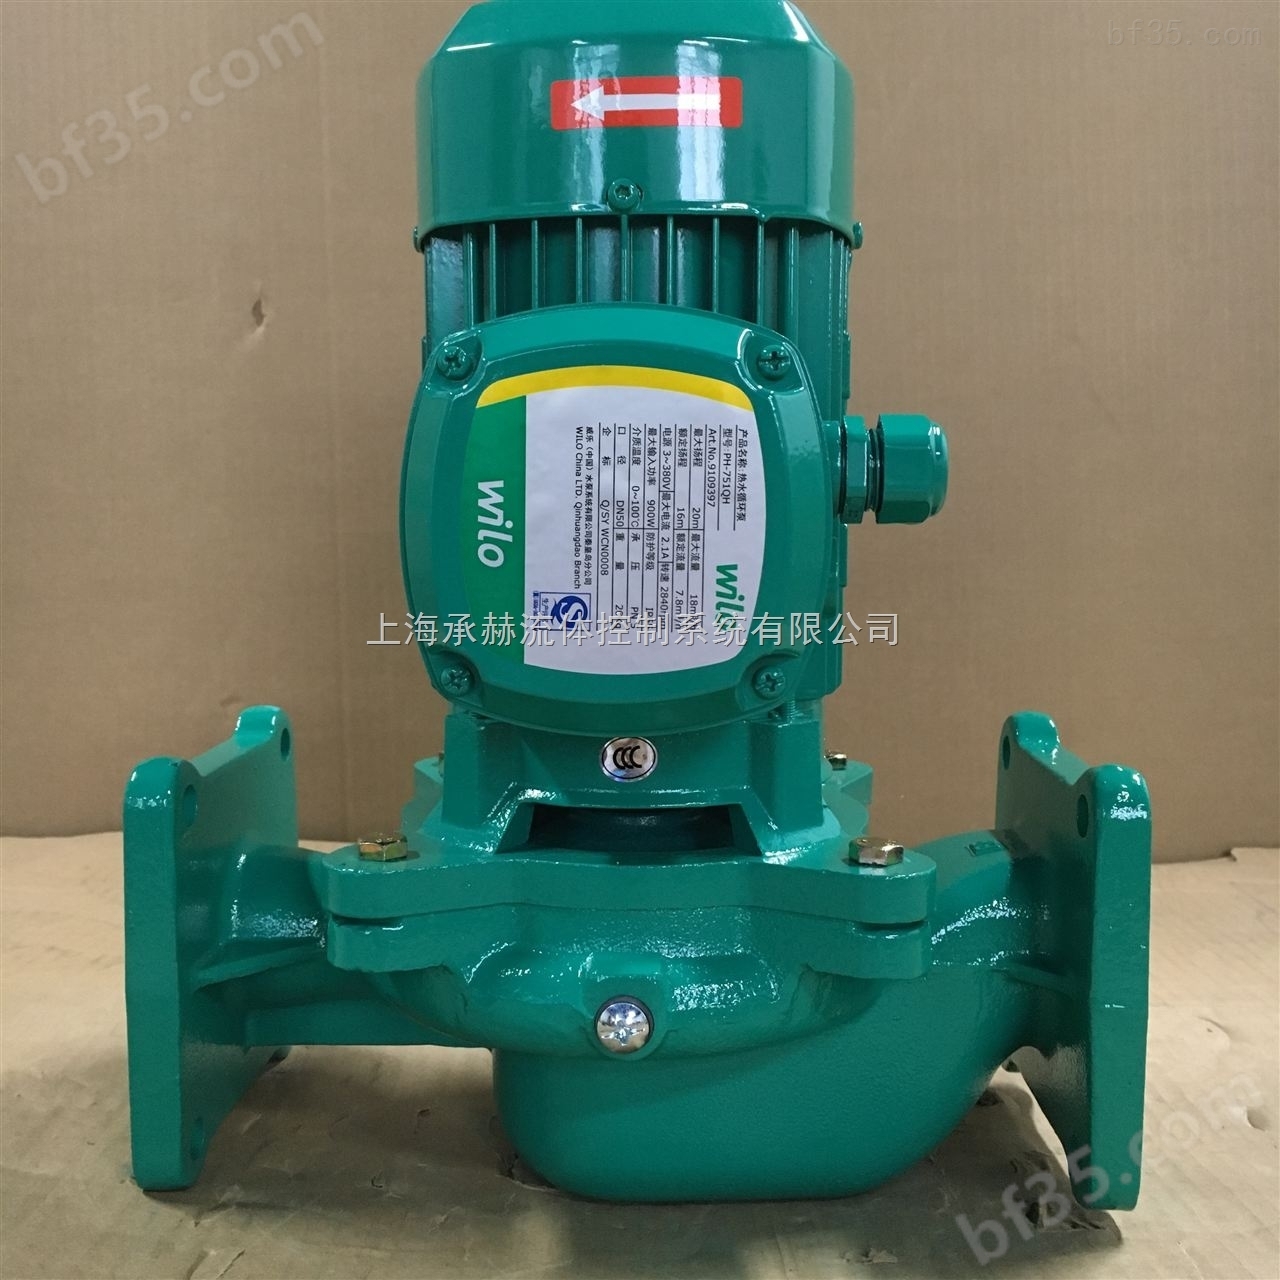 威乐水泵太阳能热水循环泵/家庭用水增压/wilo上海代理